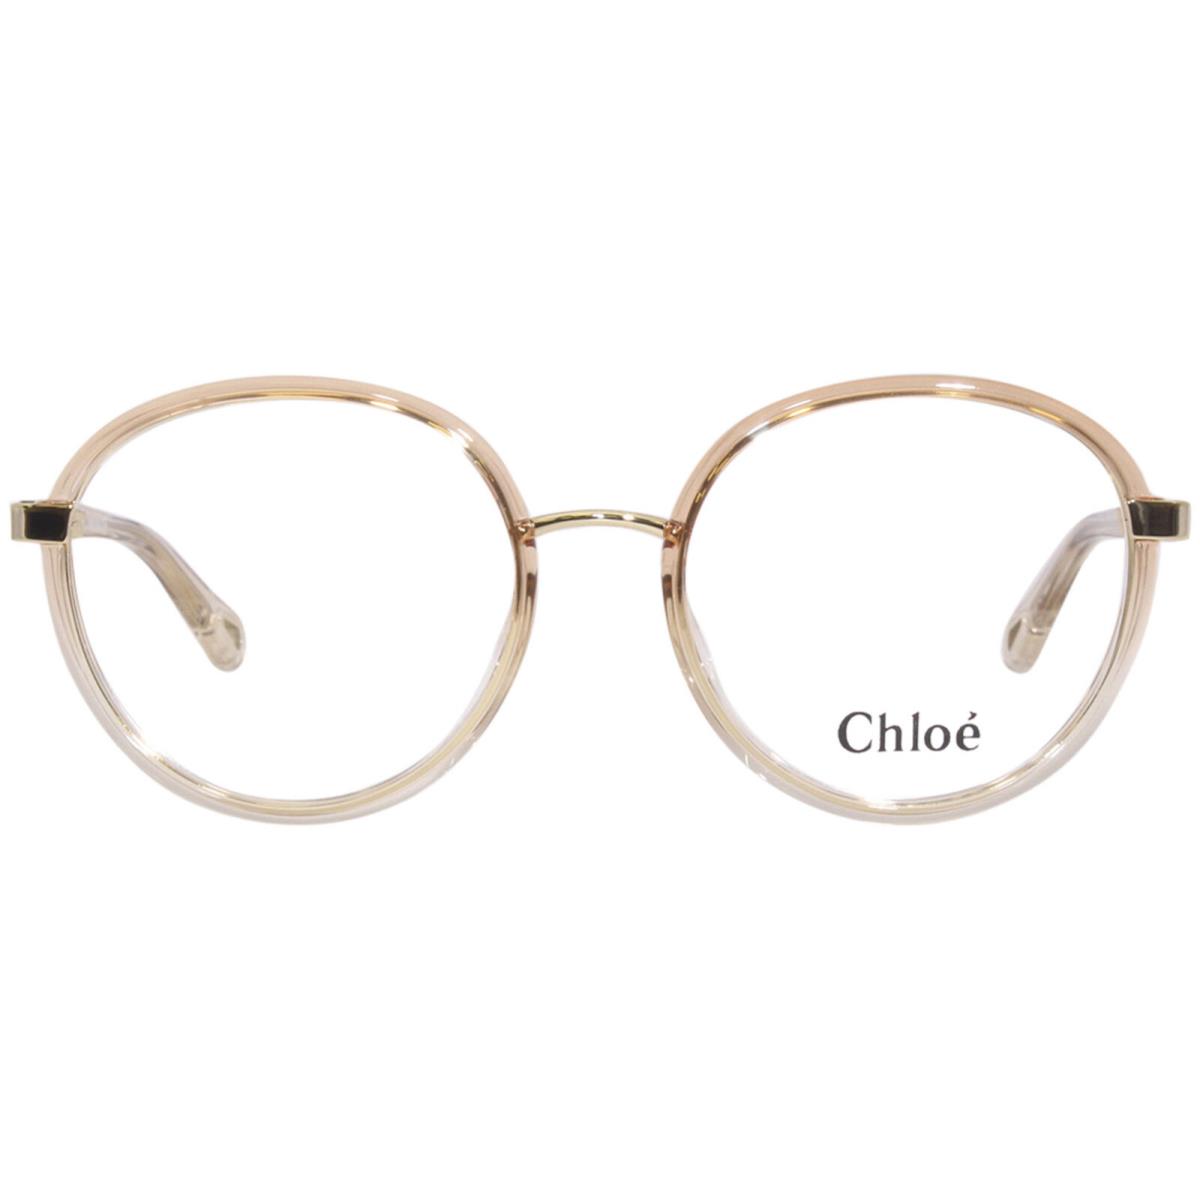 Chloe CH0033O 003 Eyeglasses Frame Women`s Orange Full Rim Round Shape 51mm